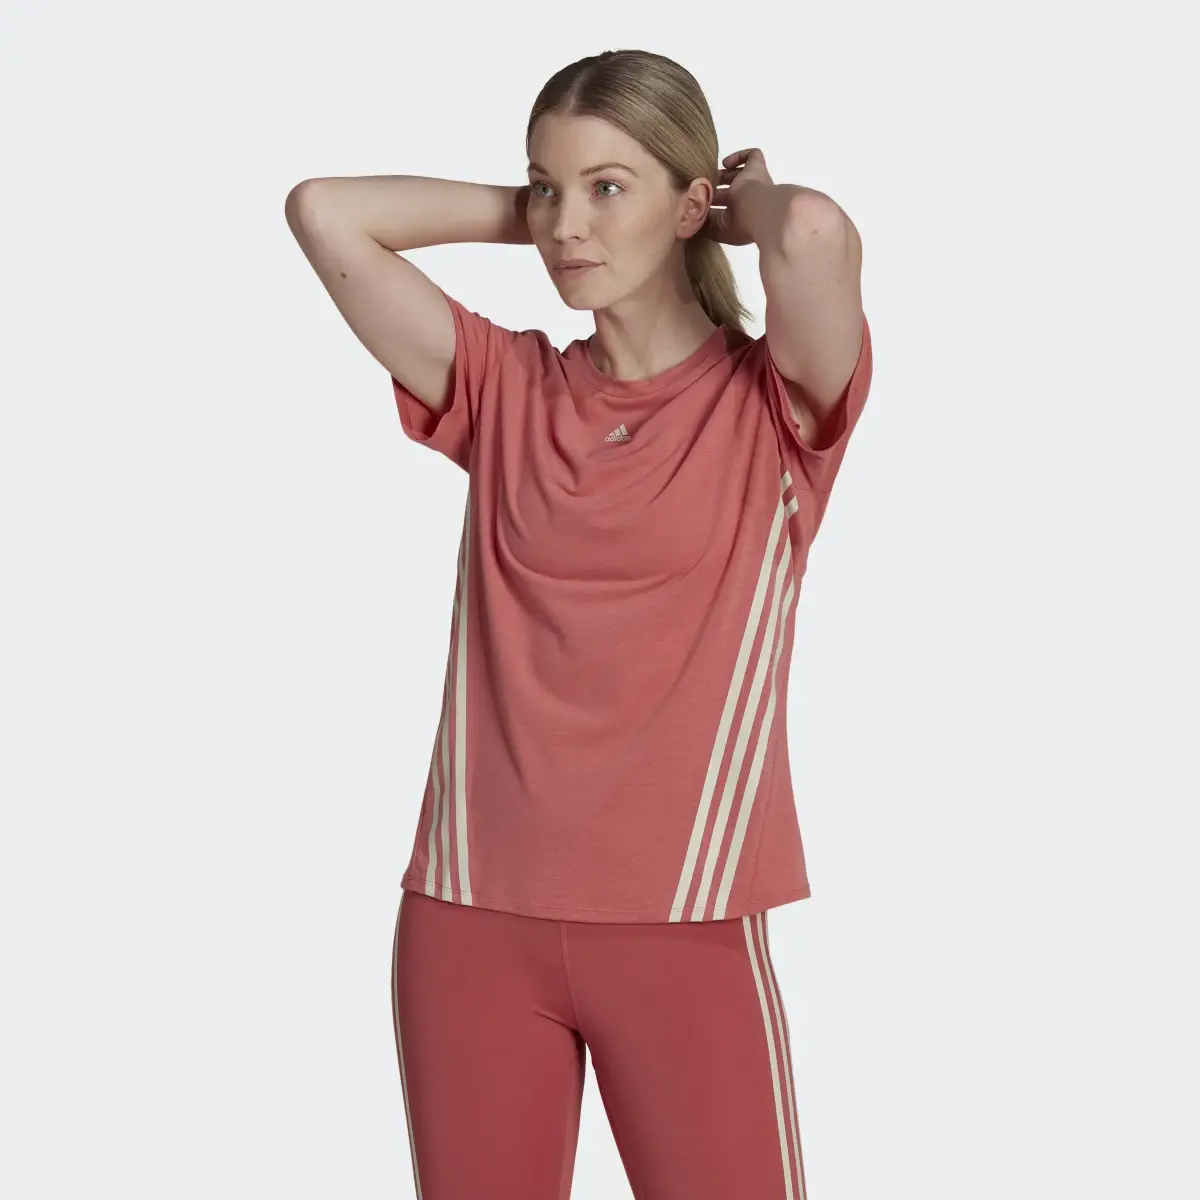 Adidas T-shirt Trainicons 3-Stripes. 2